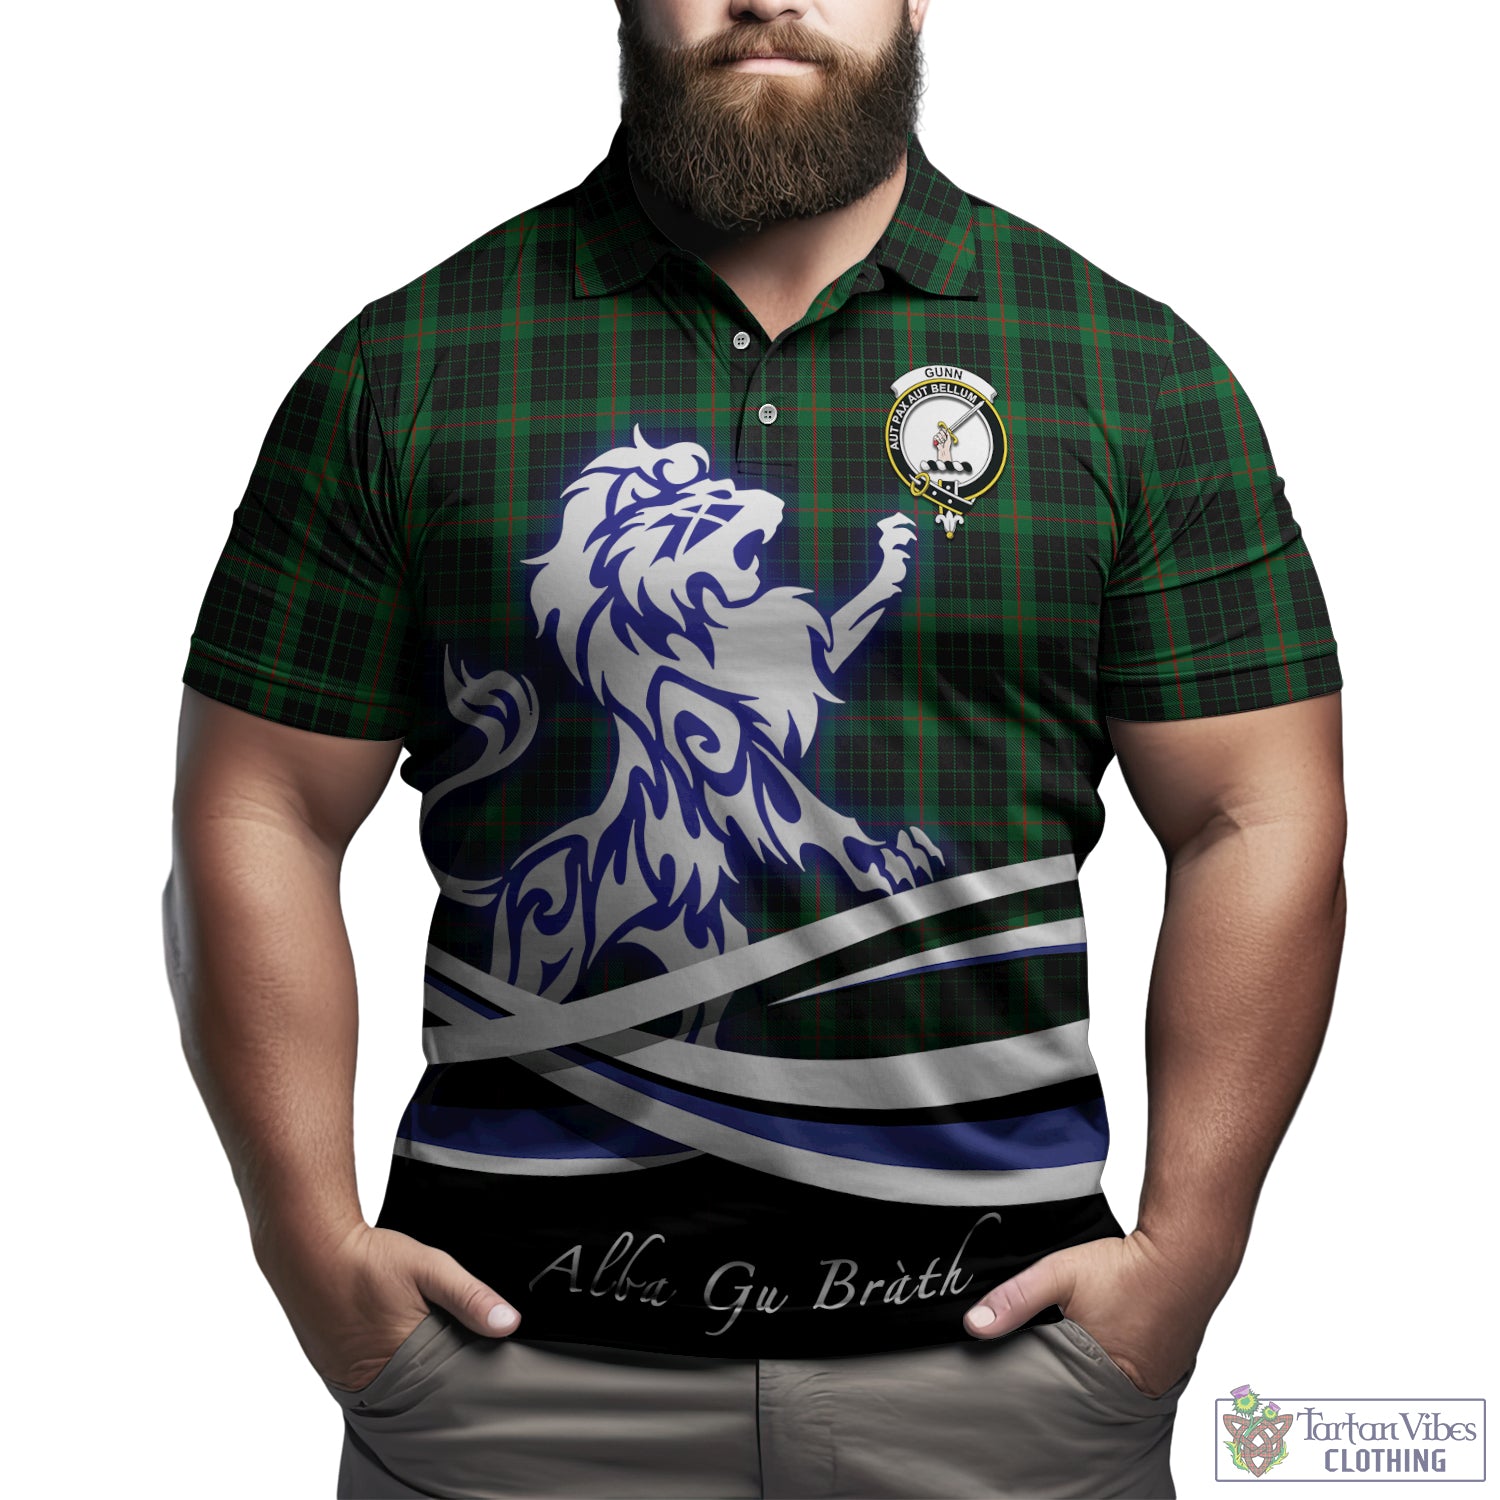 gunn-logan-tartan-polo-shirt-with-alba-gu-brath-regal-lion-emblem